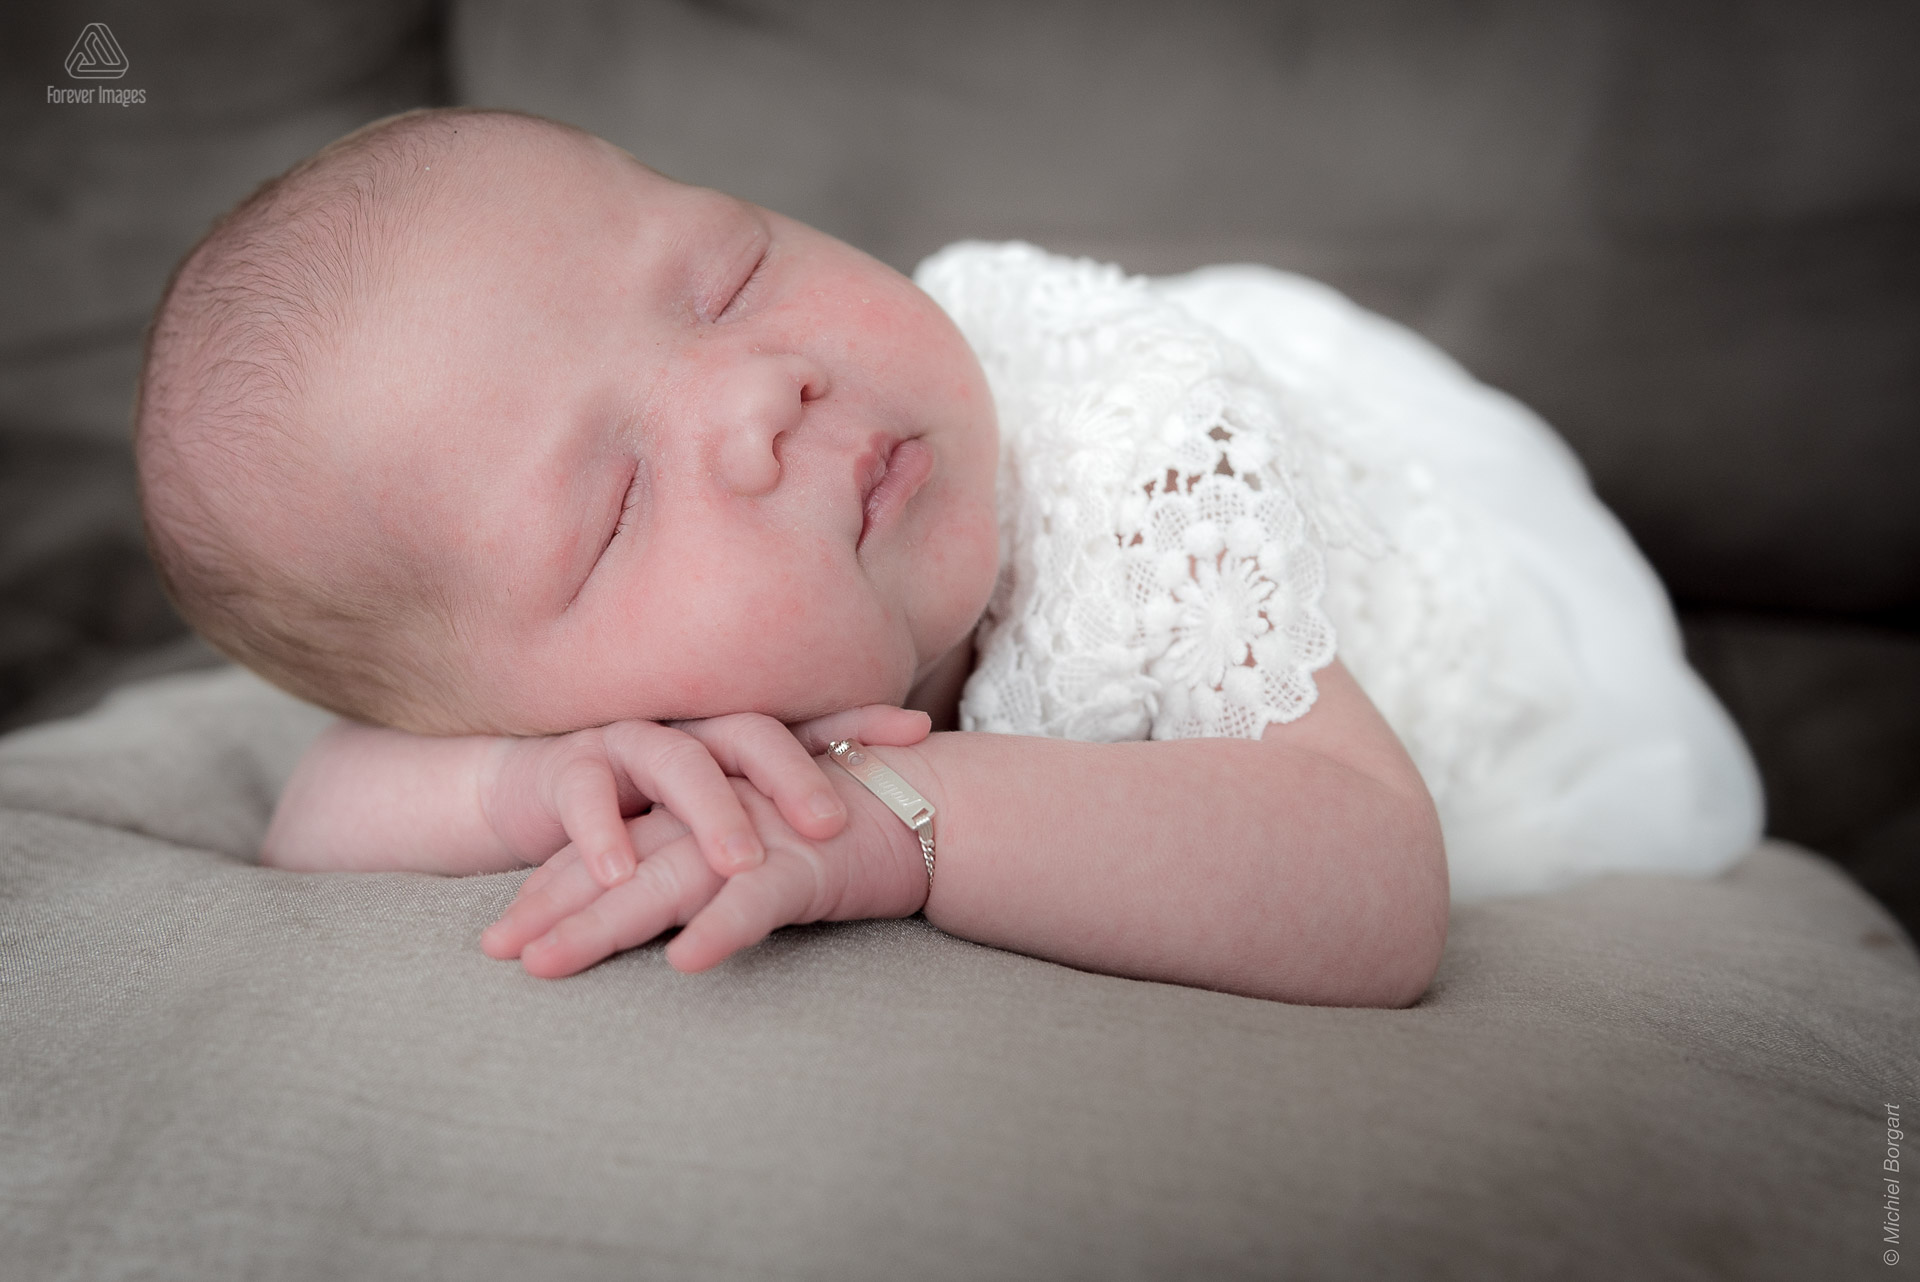 Kinderfoto van de new born baby die op kussen slaapt | Portretfotograaf Michiel Borgart - Forever Images.